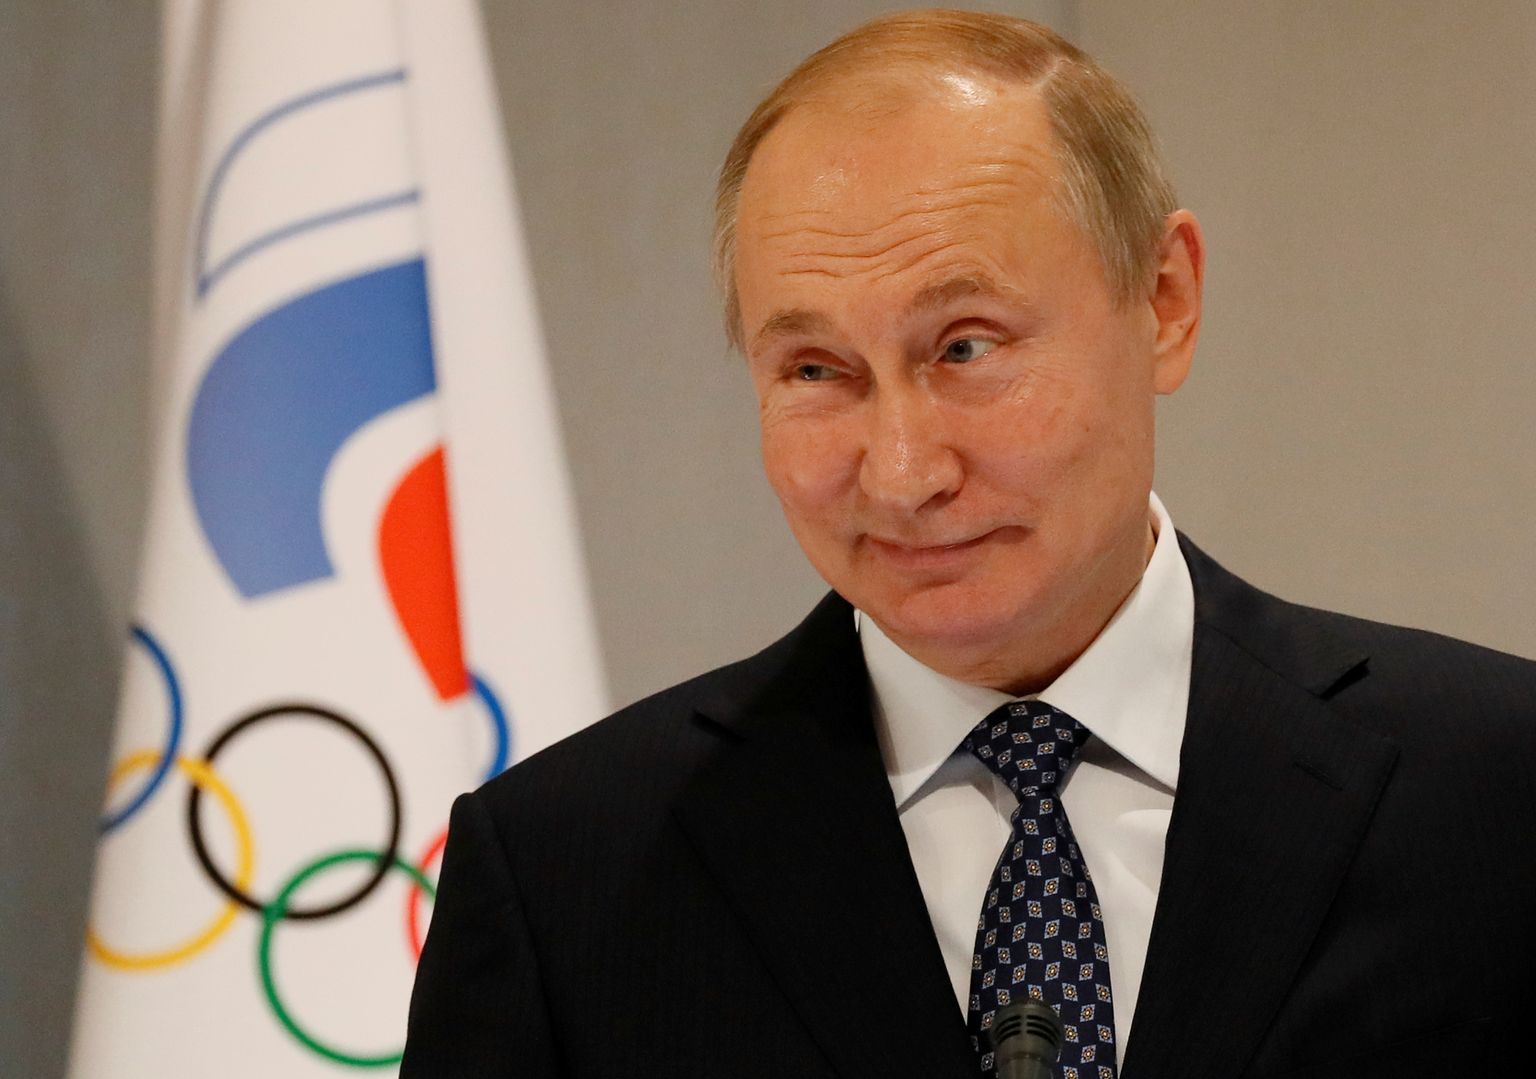 Venemaa president Vladimir Putin külastas detsembris 2019 Sotšis asuvat Venemaa olümpiaülikooli